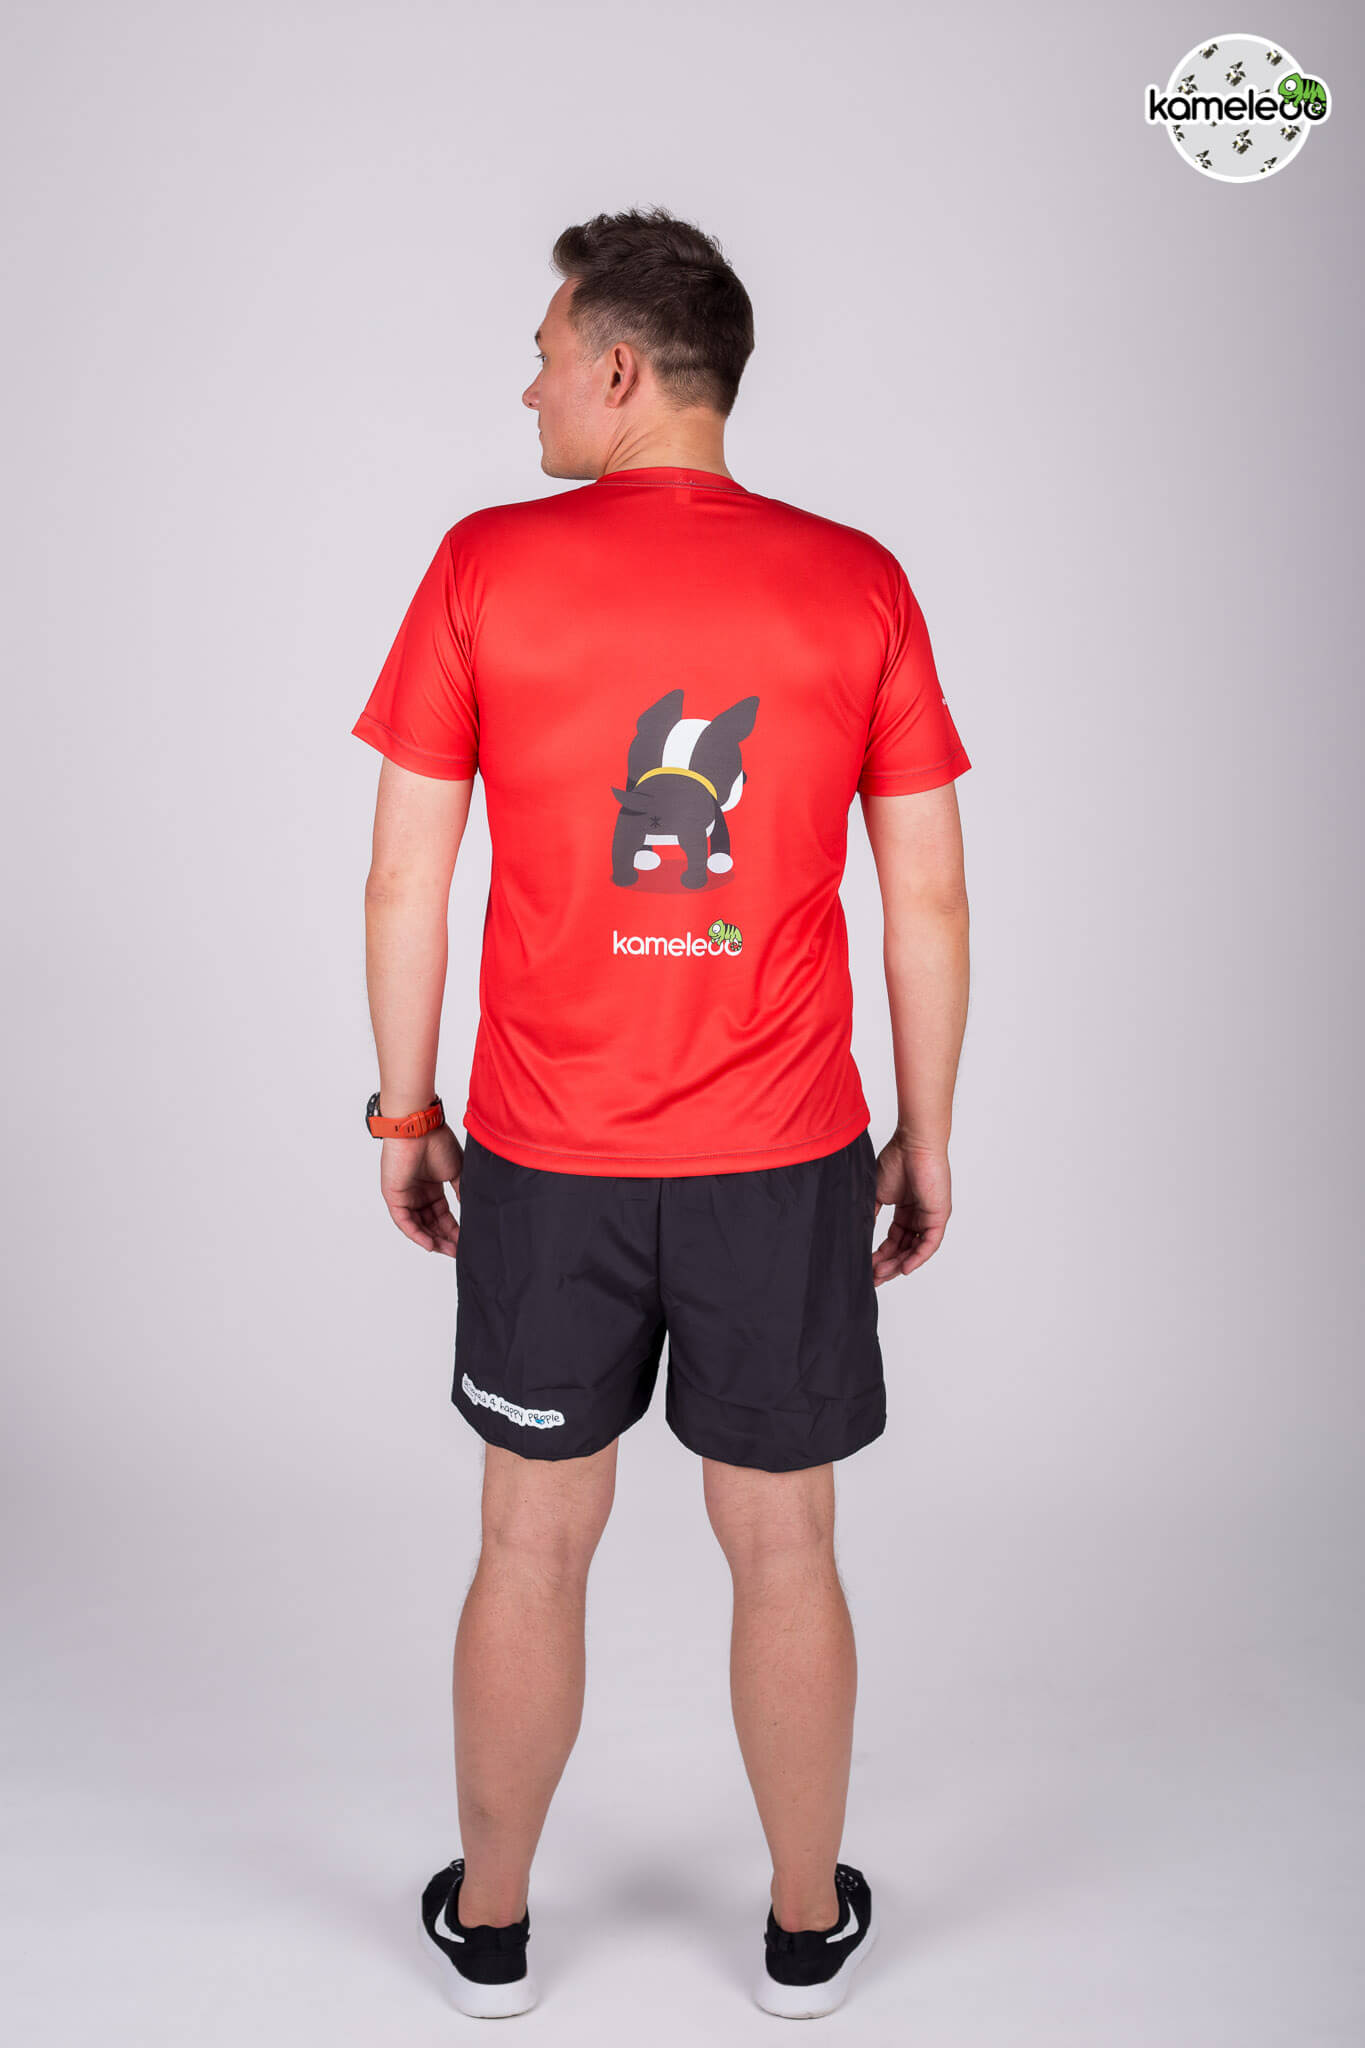 Bostoon Running T-Shirt - Red